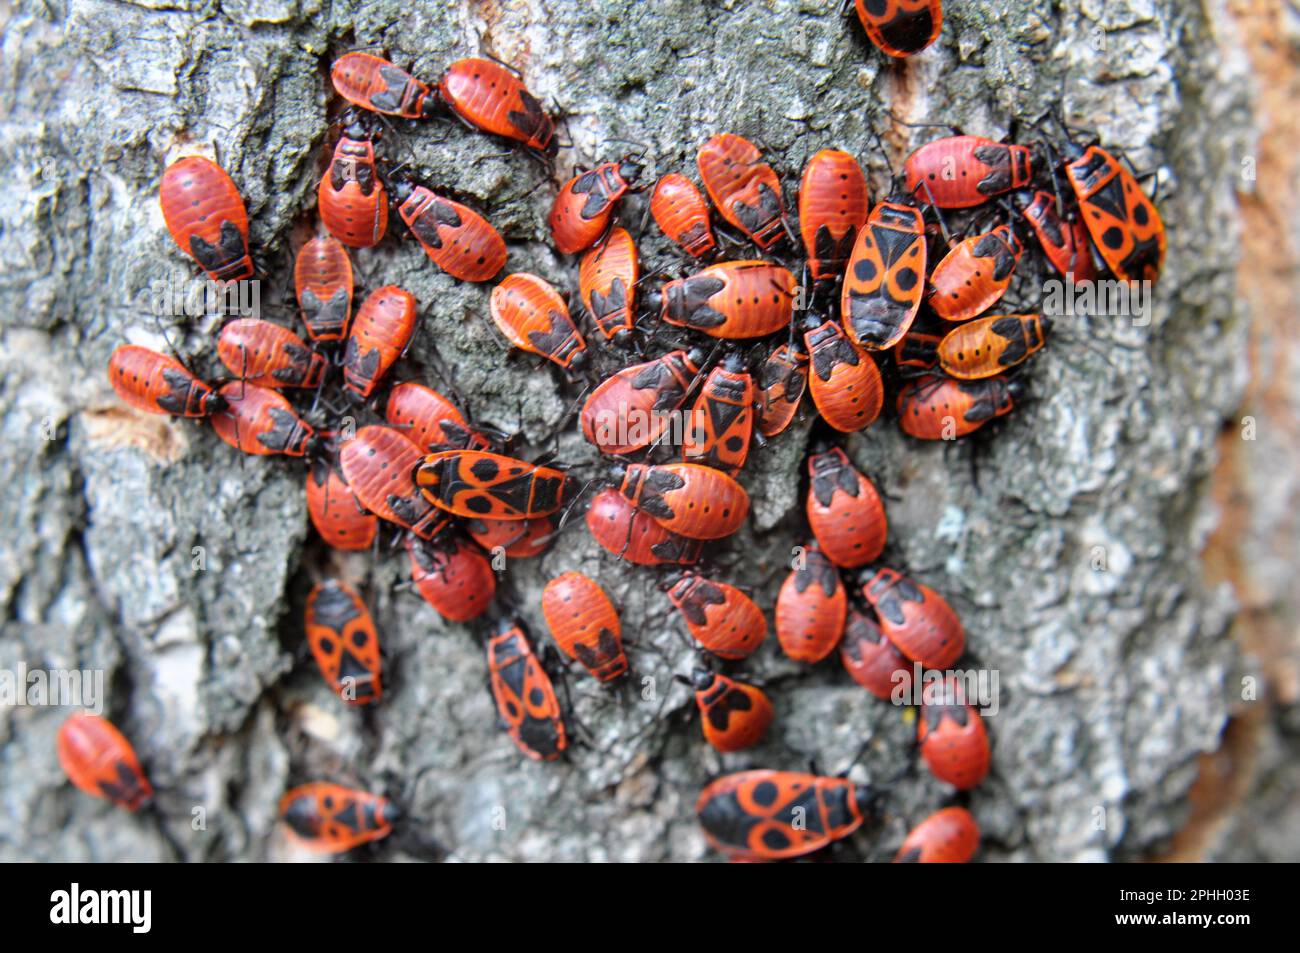 Kolonie von Pyrrhocoris apterus-Käfern in freier Wildbahn auf einem Baumstamm Stockfoto